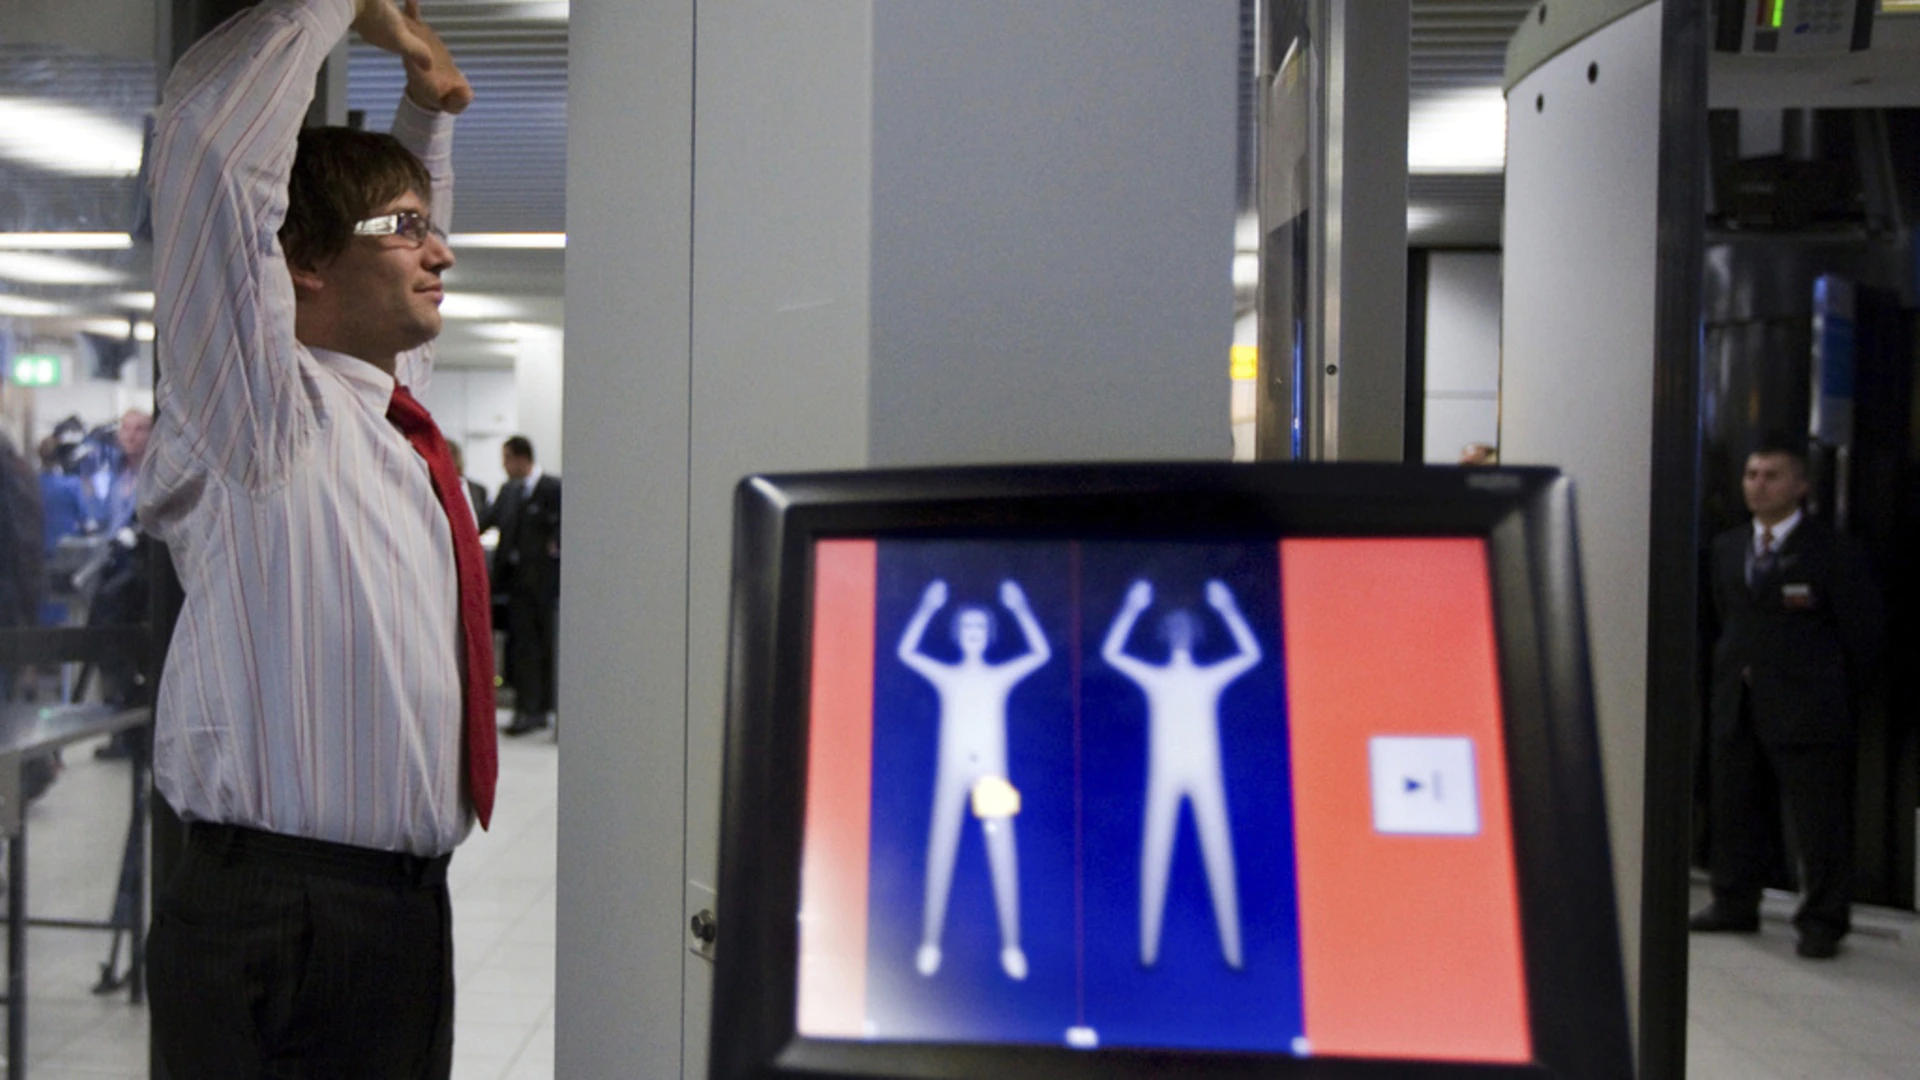 Una mirada detallada a las imágenes del escáner de equipaje en el aeropuerto de drogas